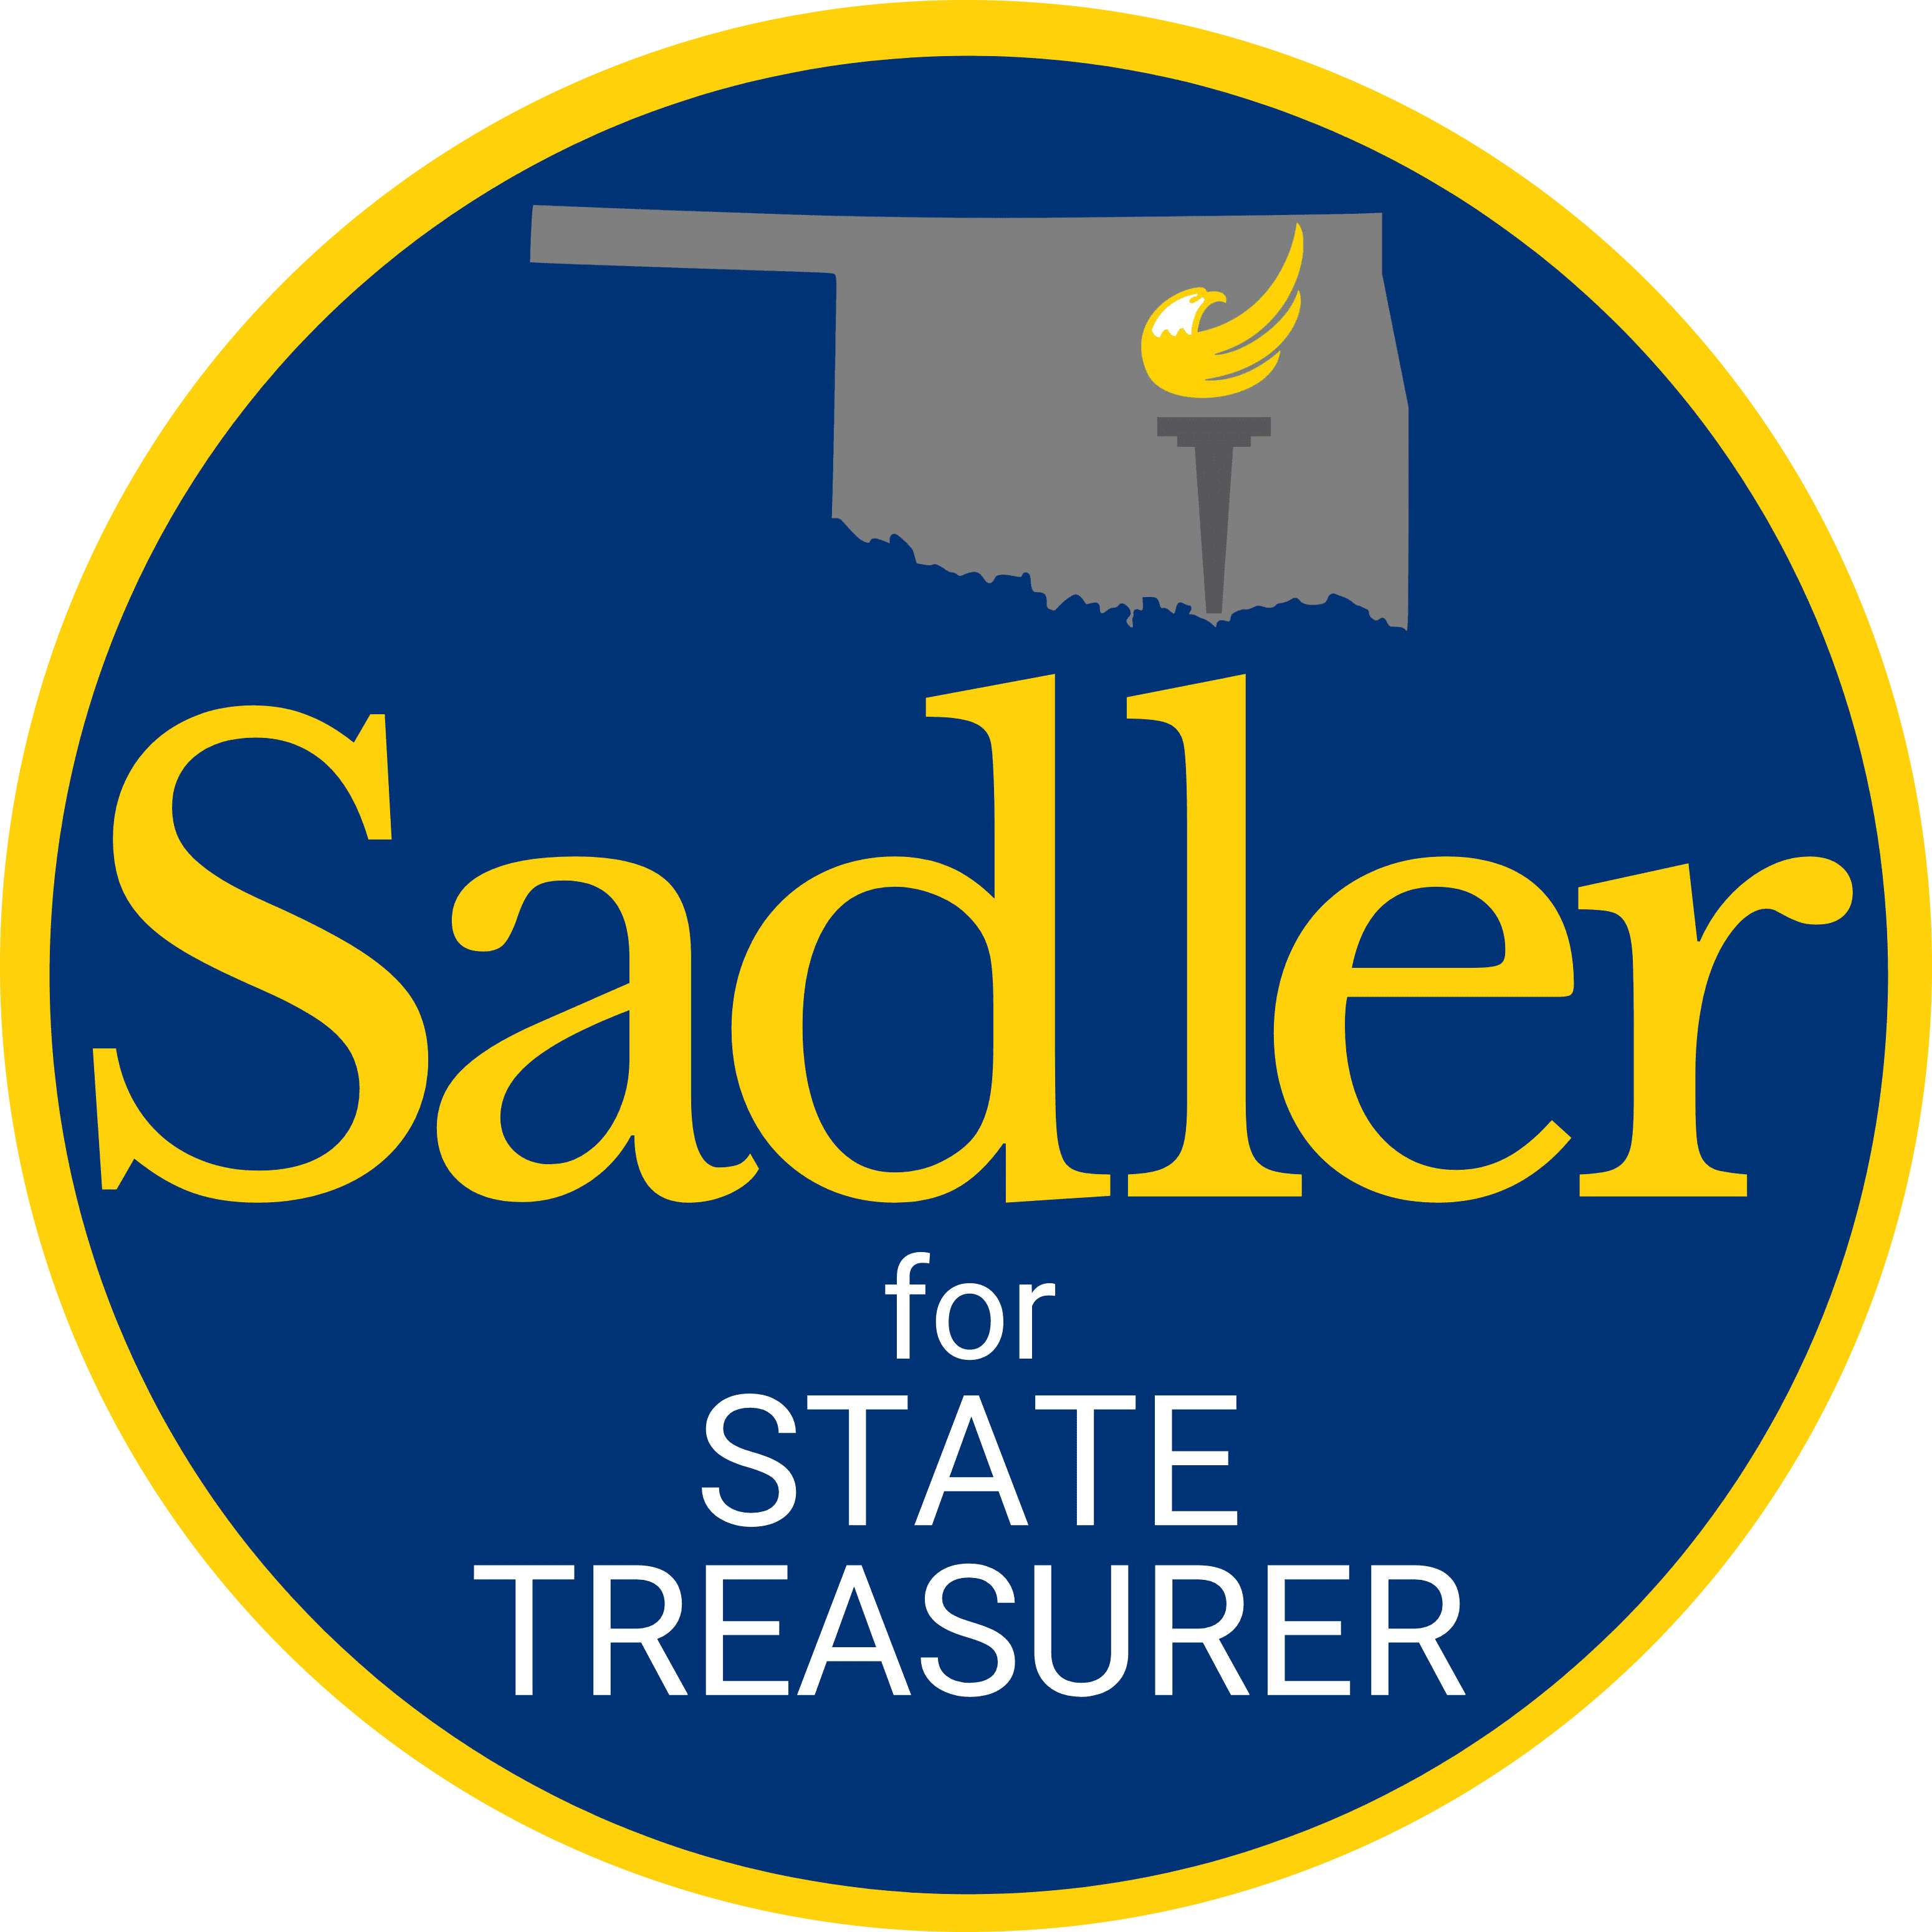 Greg Sadler for Oklahoma State Treasurer